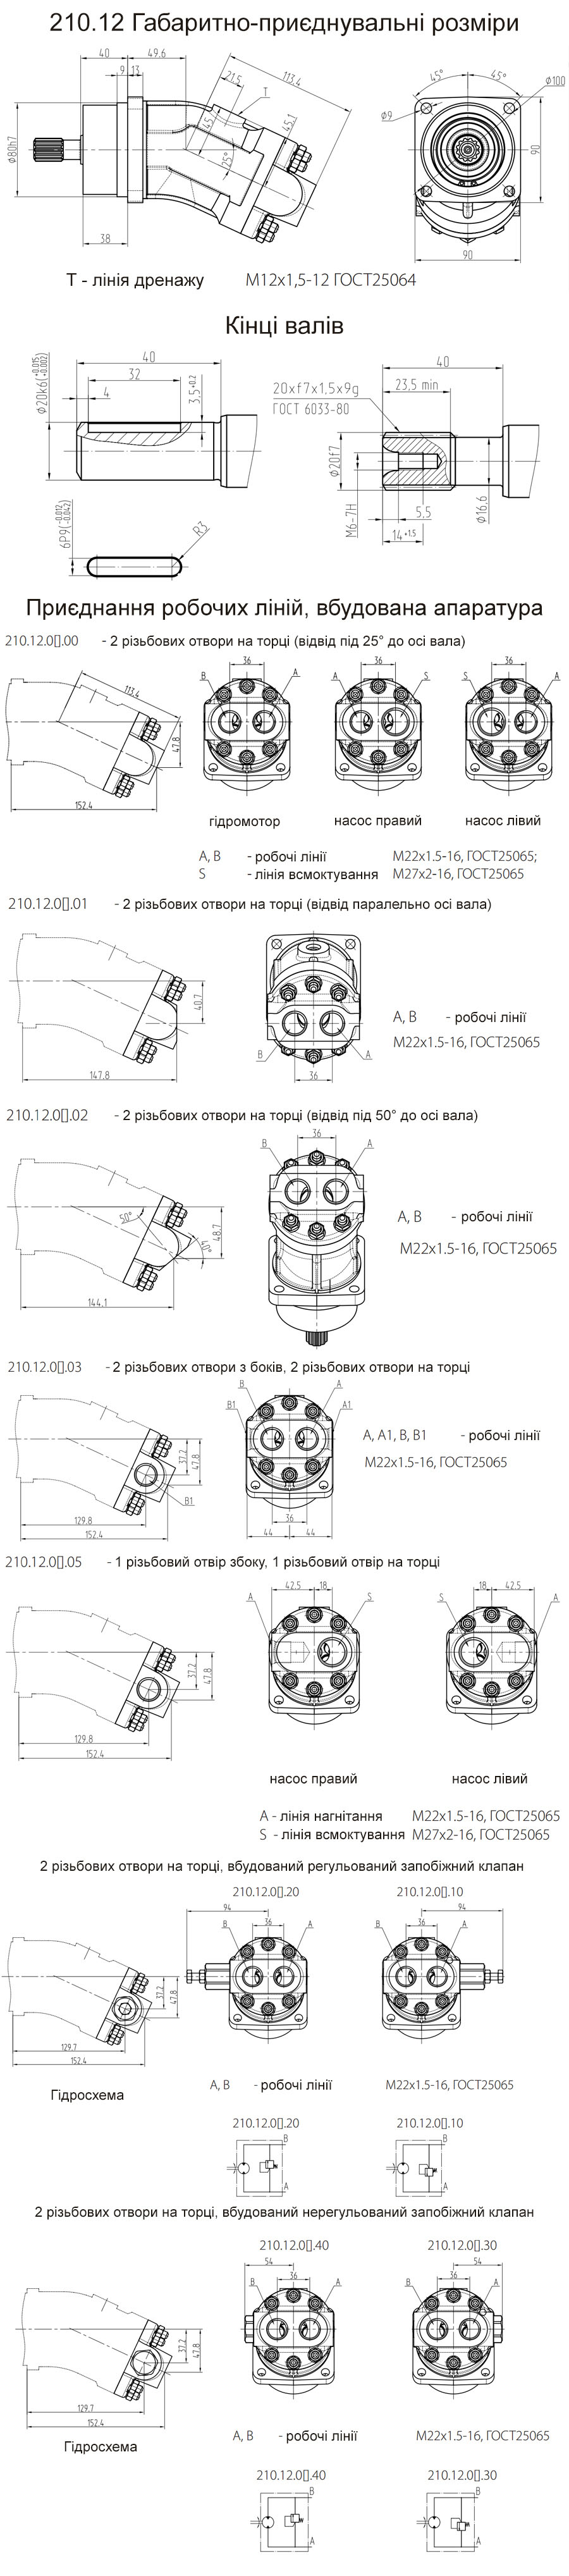 Габаритно-приєднувальні розміри гідромоторів 210.12